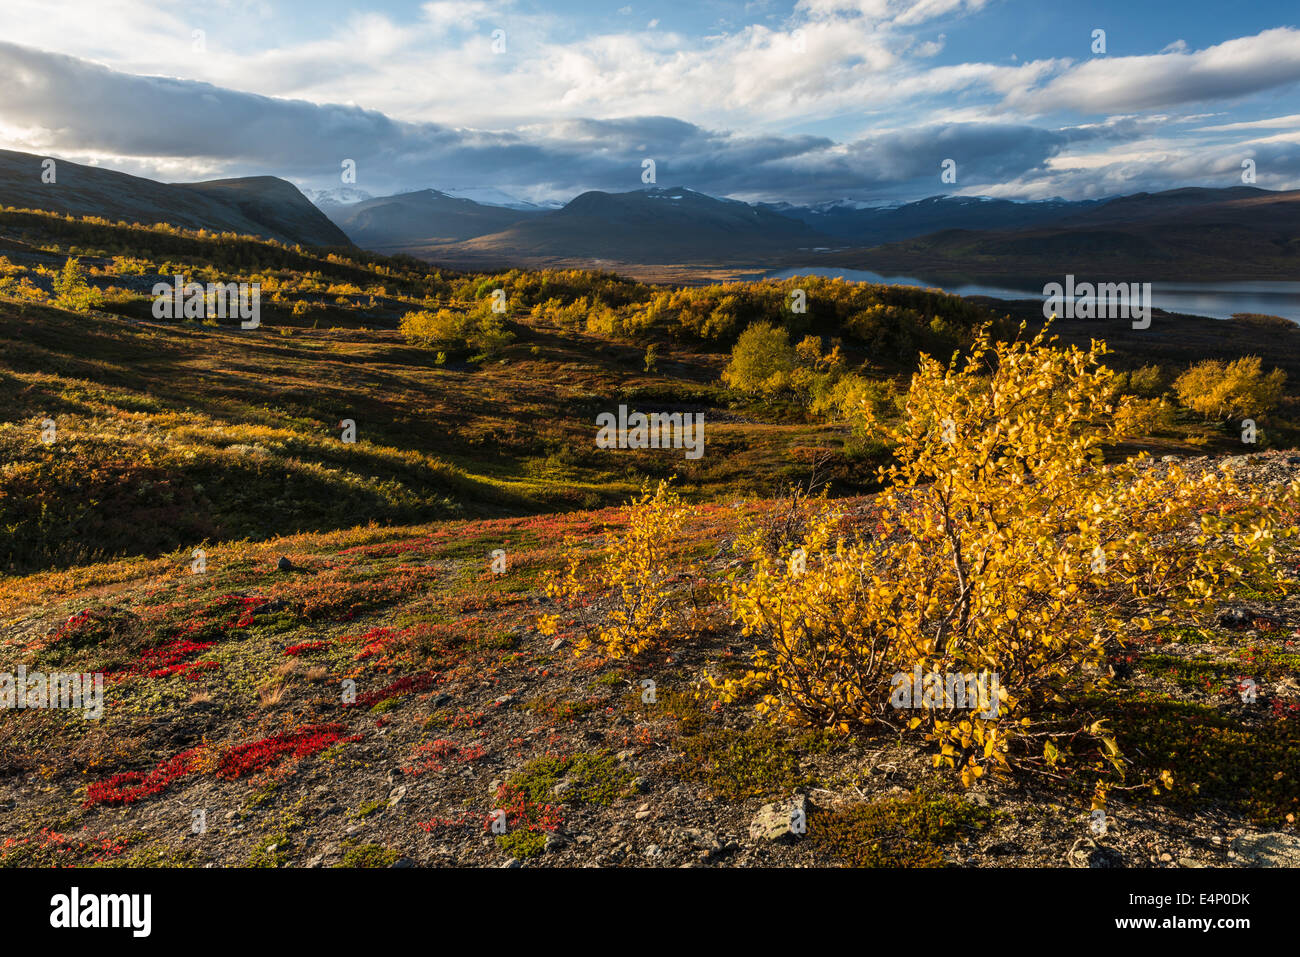 Blick auf den vedere Paittasjaervi und Berge im Kebnekaisefjaell, Norrbotten, Lappland, Schweden Foto Stock